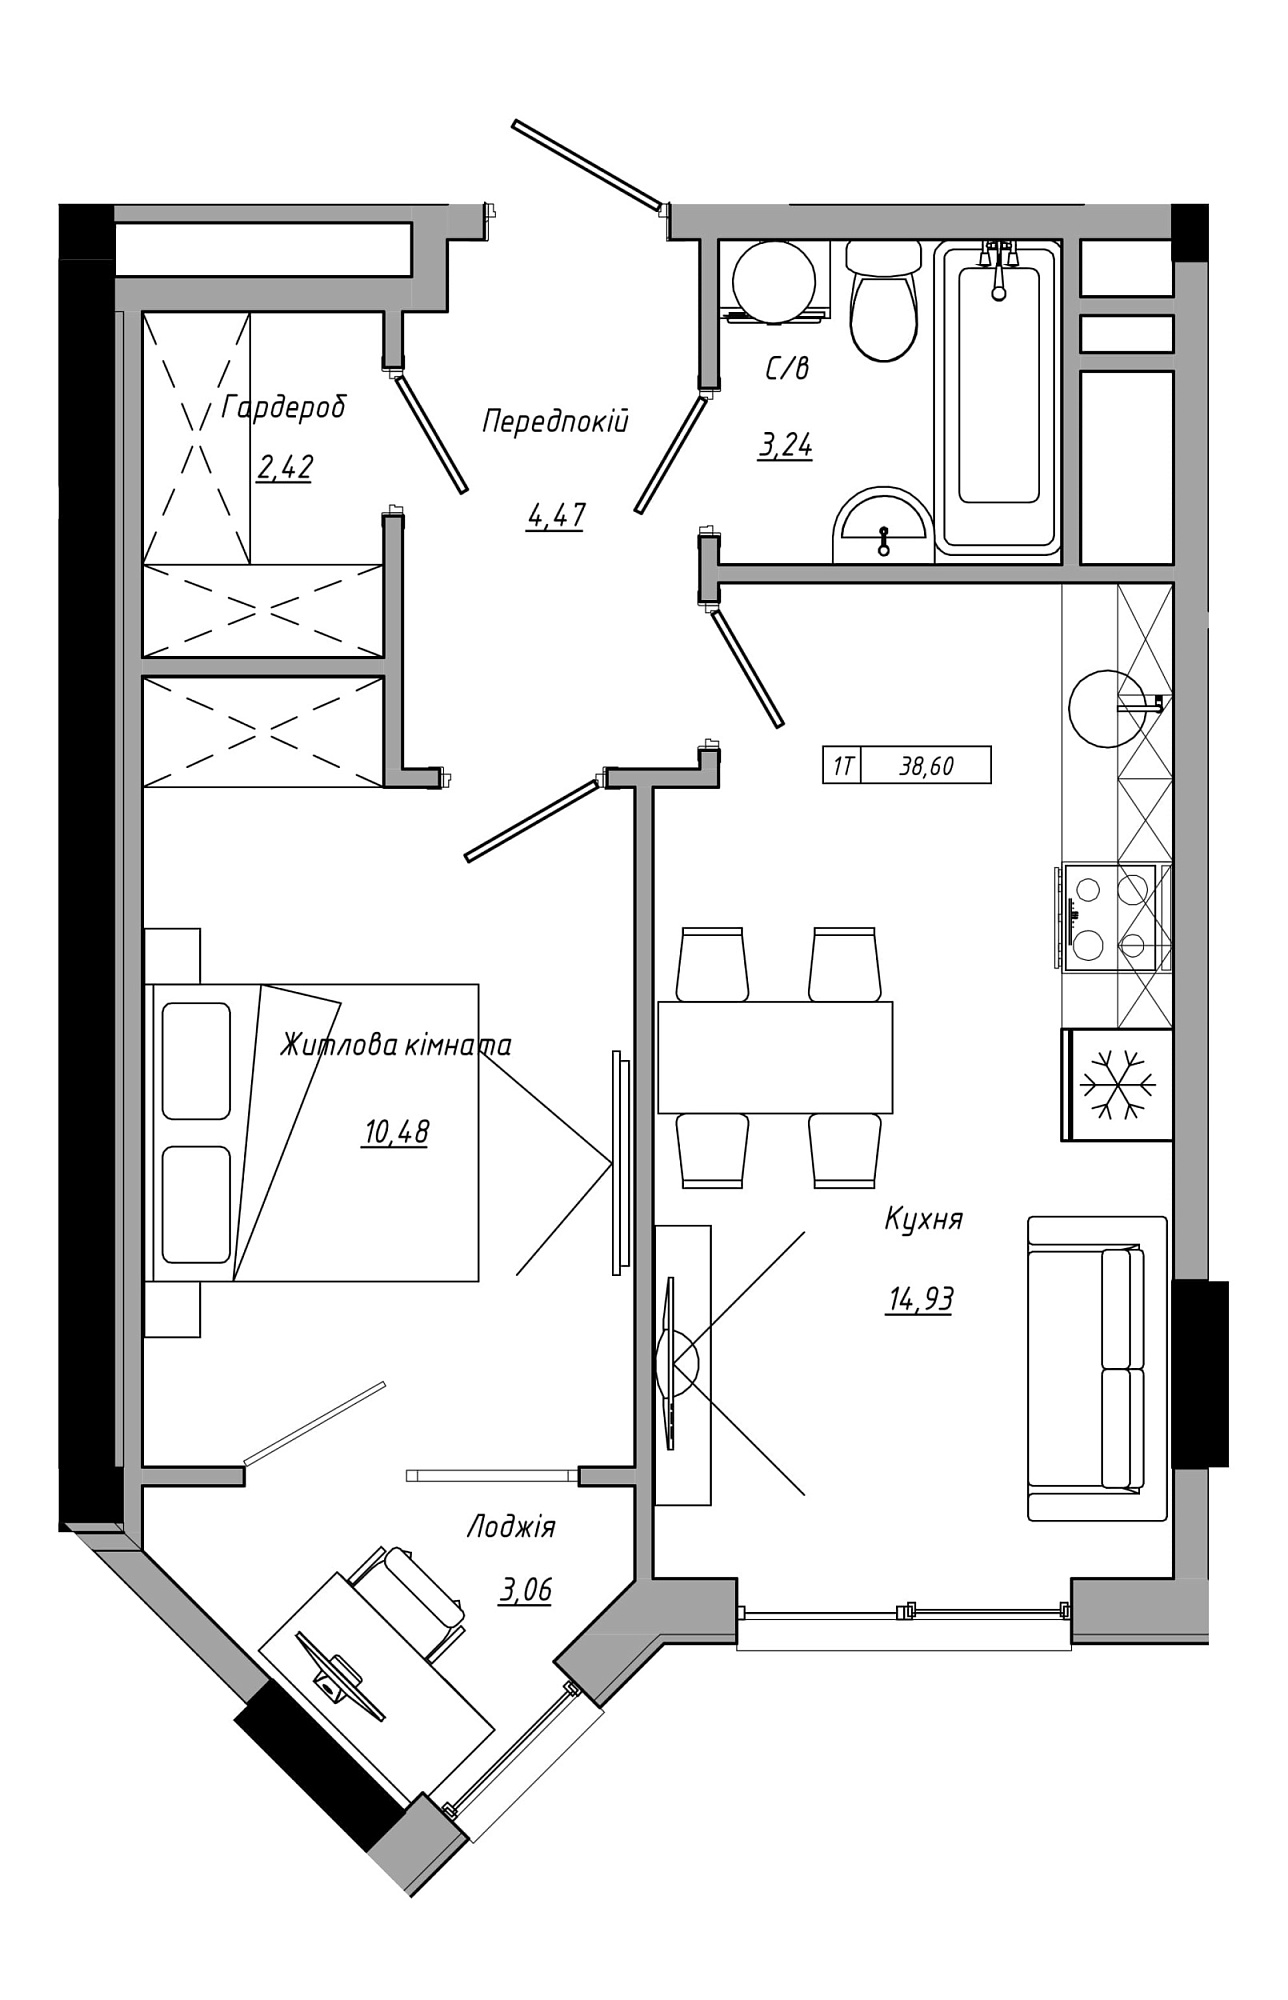 Планировка 1-к квартира площей 38.6м2, AB-21-05/00022.